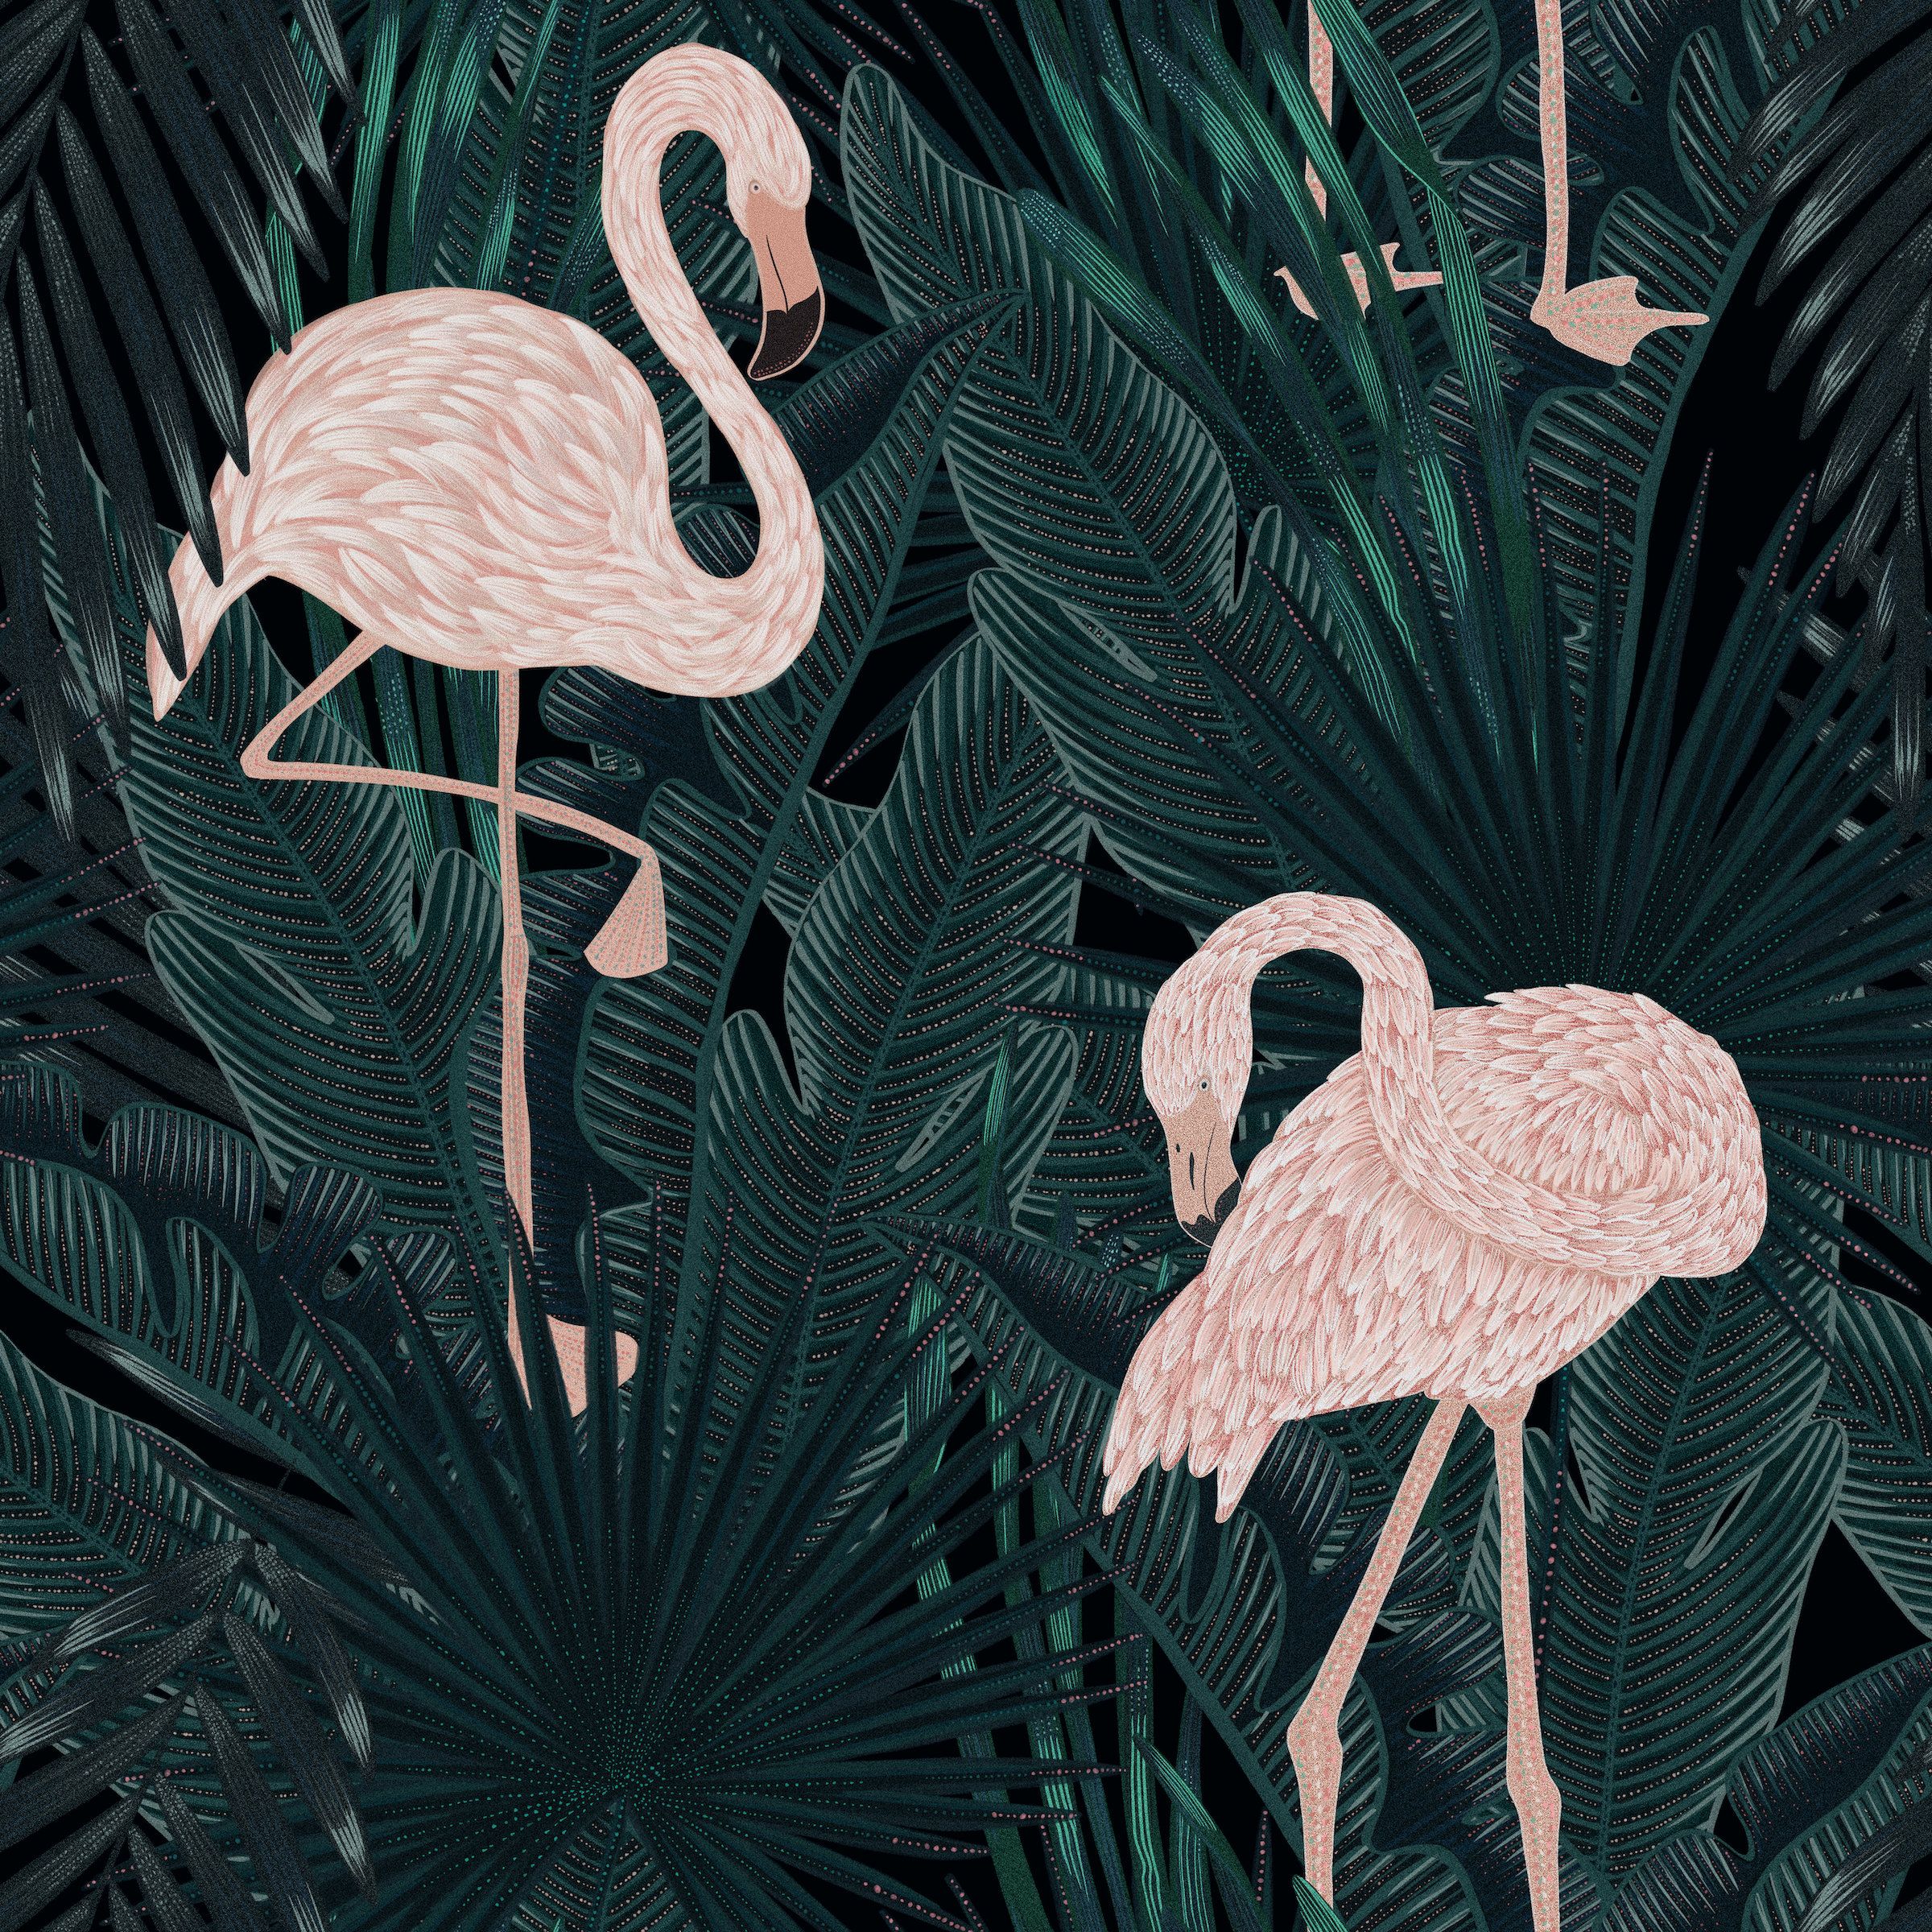  Flamingo Hintergrundbild 2400x2400. Flamingo wallpaper peel and stick deep green tropical